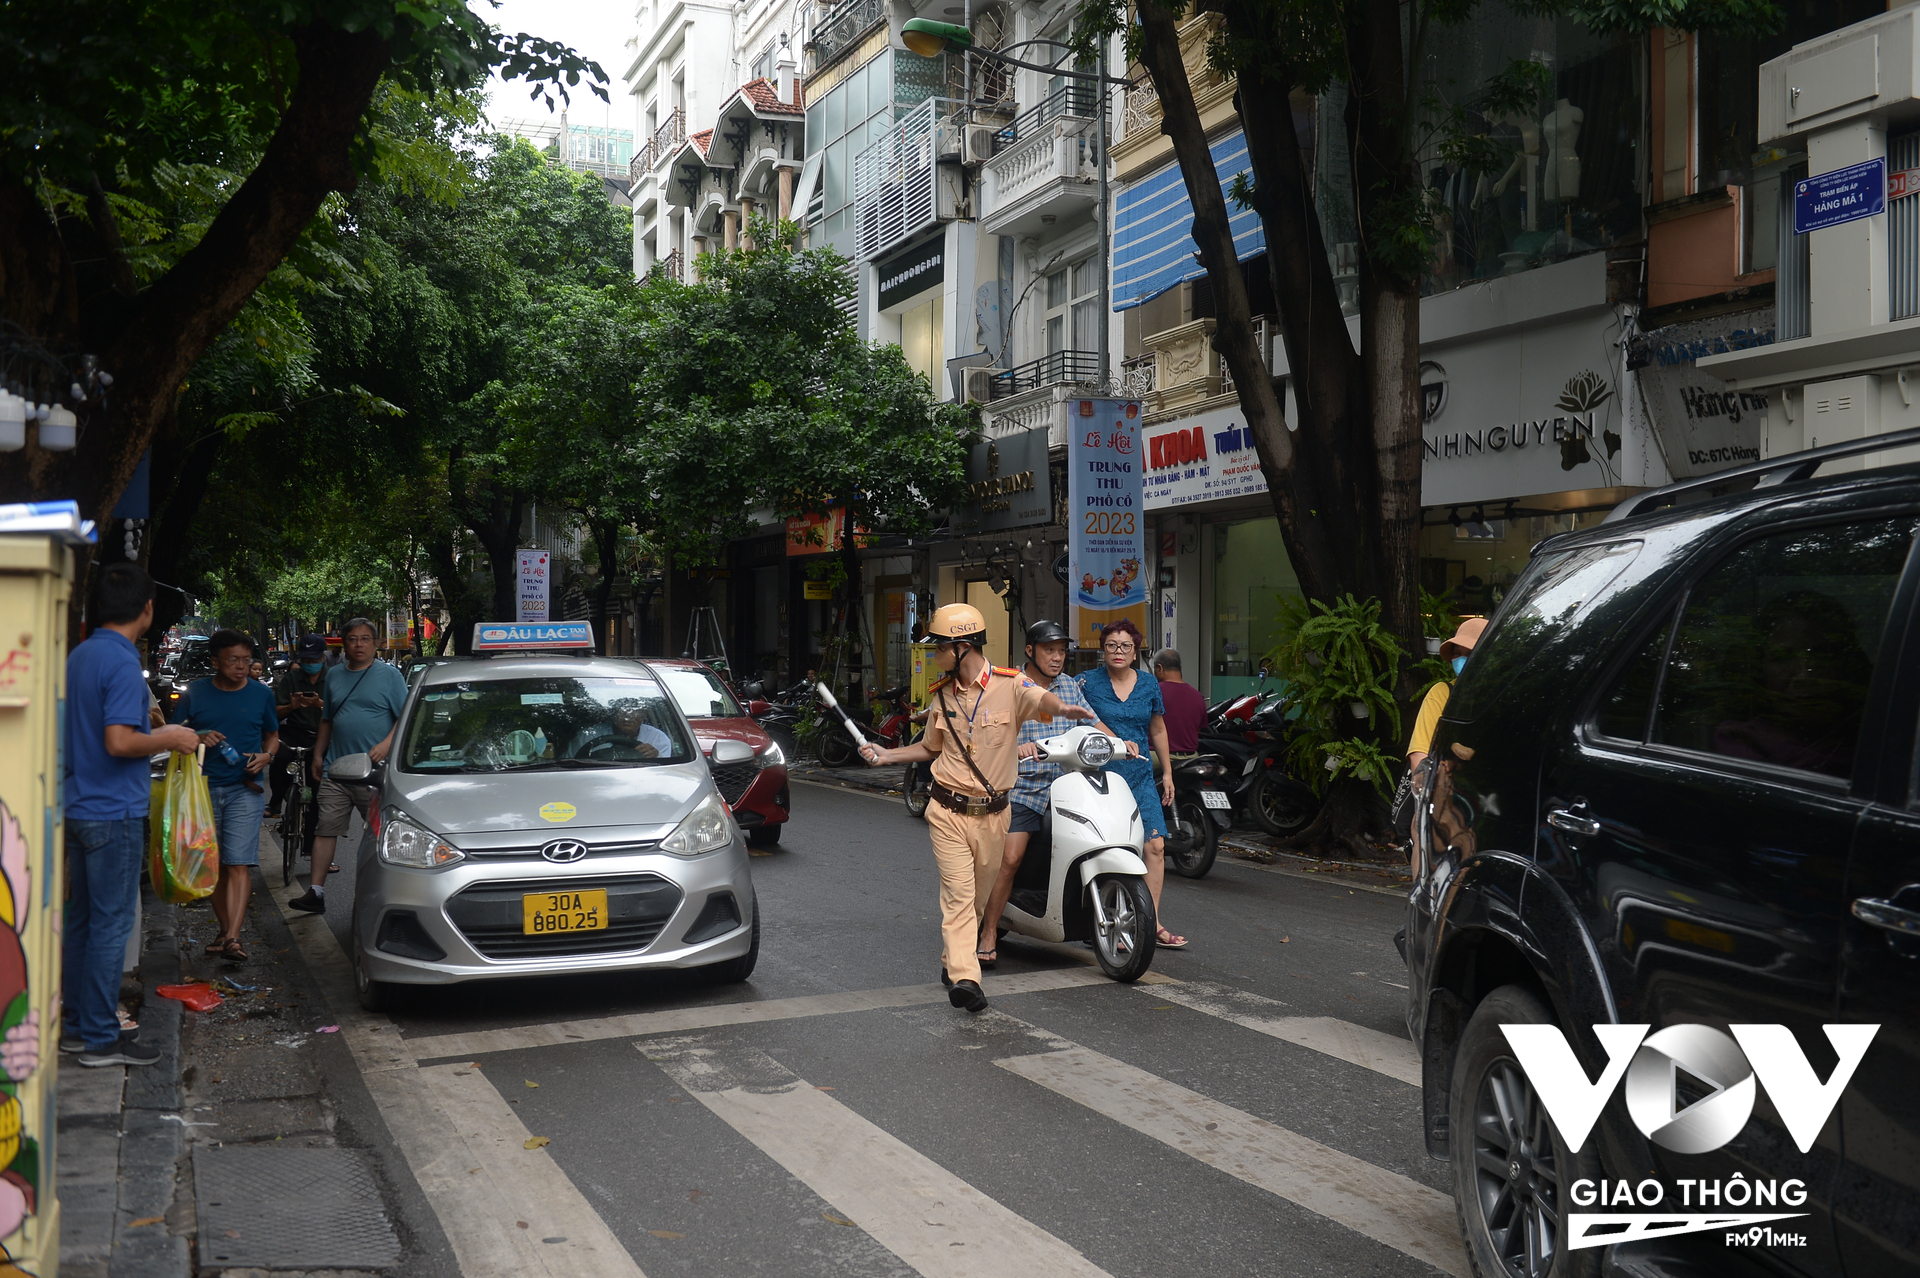 Công tác phân luồng cũng được lực lượng chức năng quận Hoàn Kiếm, Hà Nội triển khai để tránh ùn tắc giao thông trong suốt quá trình diễn ra các hoạt động dịp Trung thu.